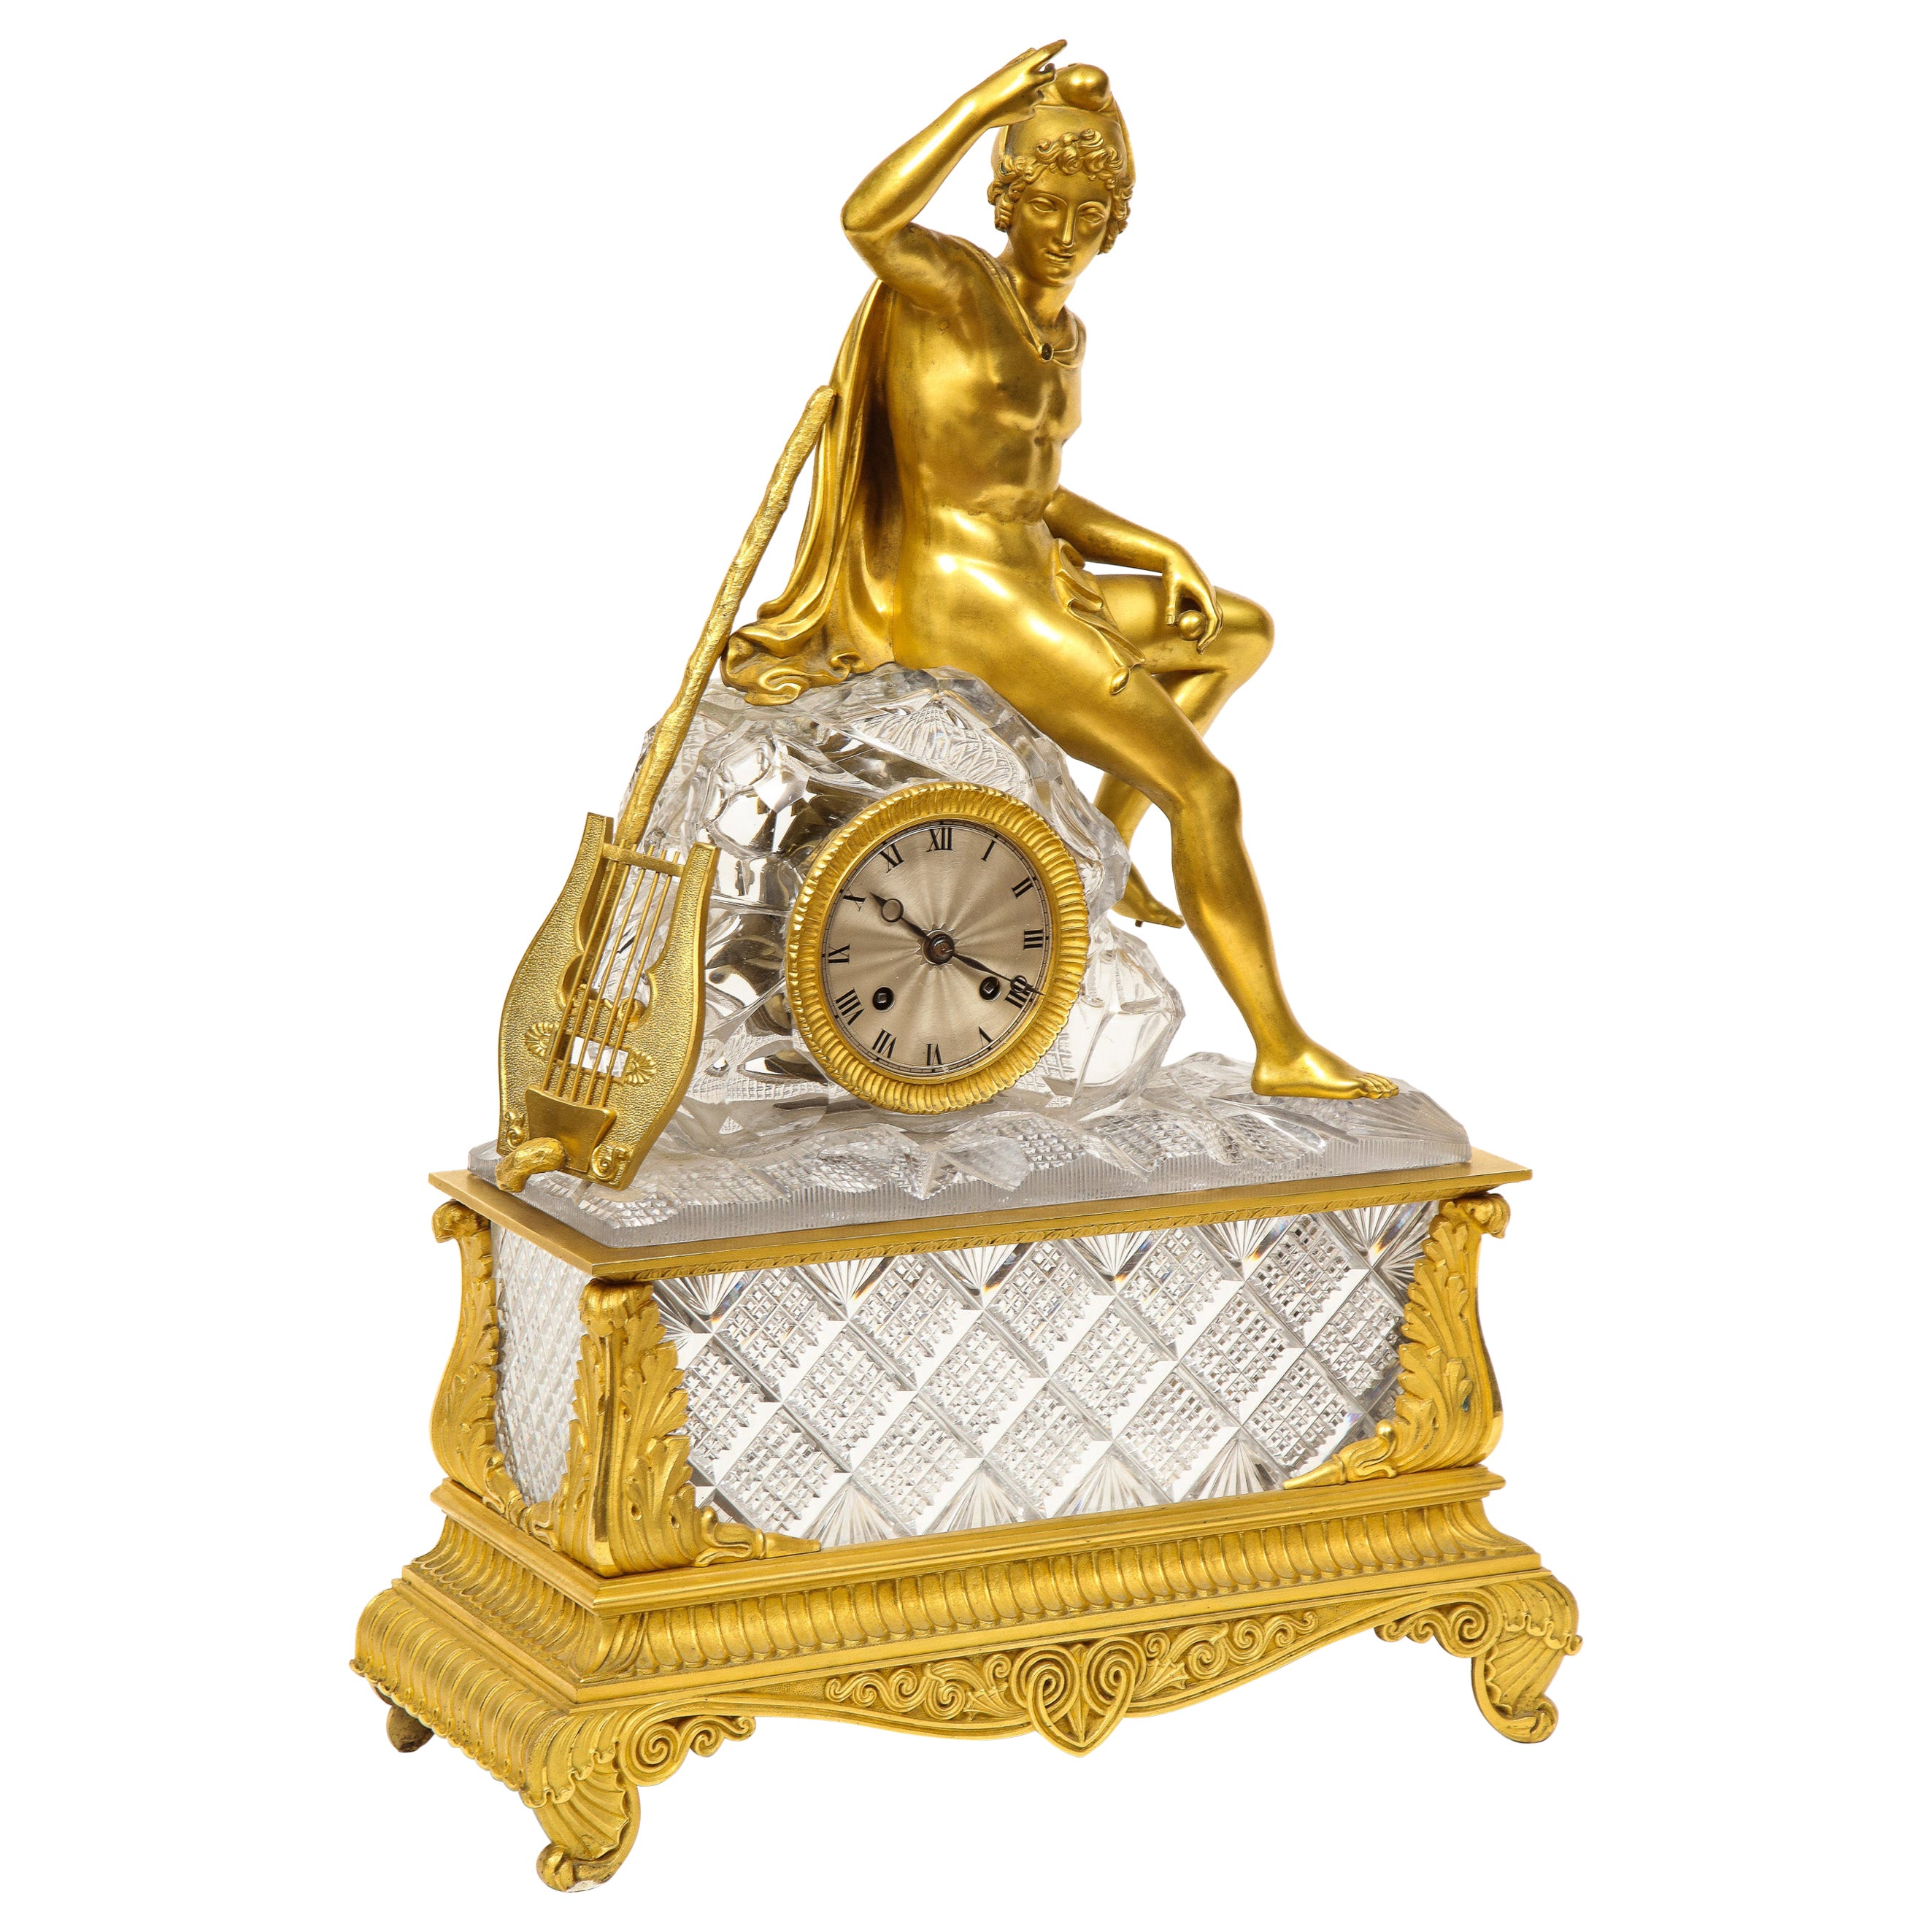 Magnifique horloge Empire française en bronze doré et cristal taillé, vers 1815